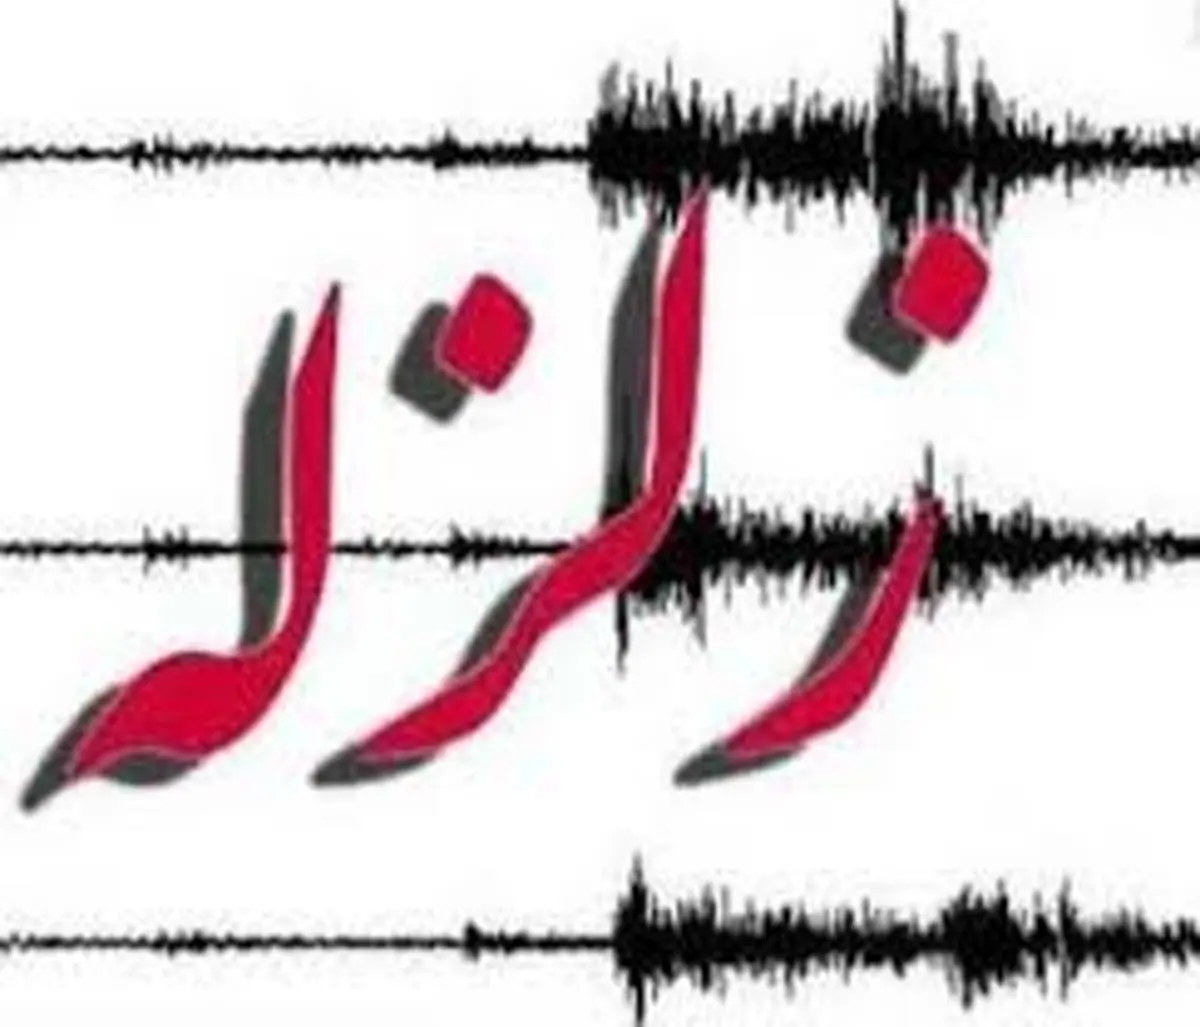 زلزله 4.1 ریشتری کازرون فارس را لرزاند